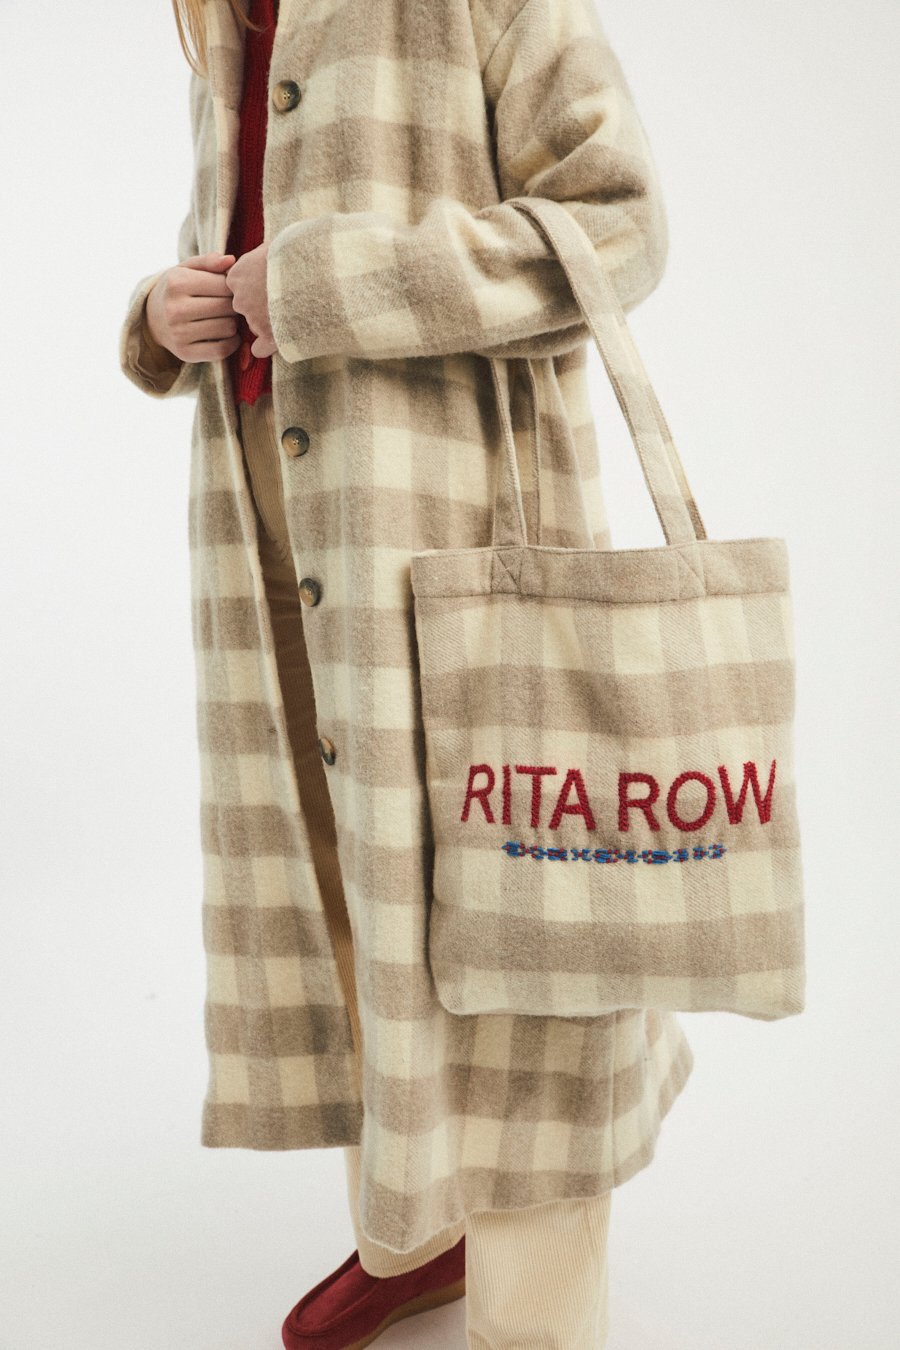 rita-row-women-accessories-2064-CO-bag-kaiser-4.jpg